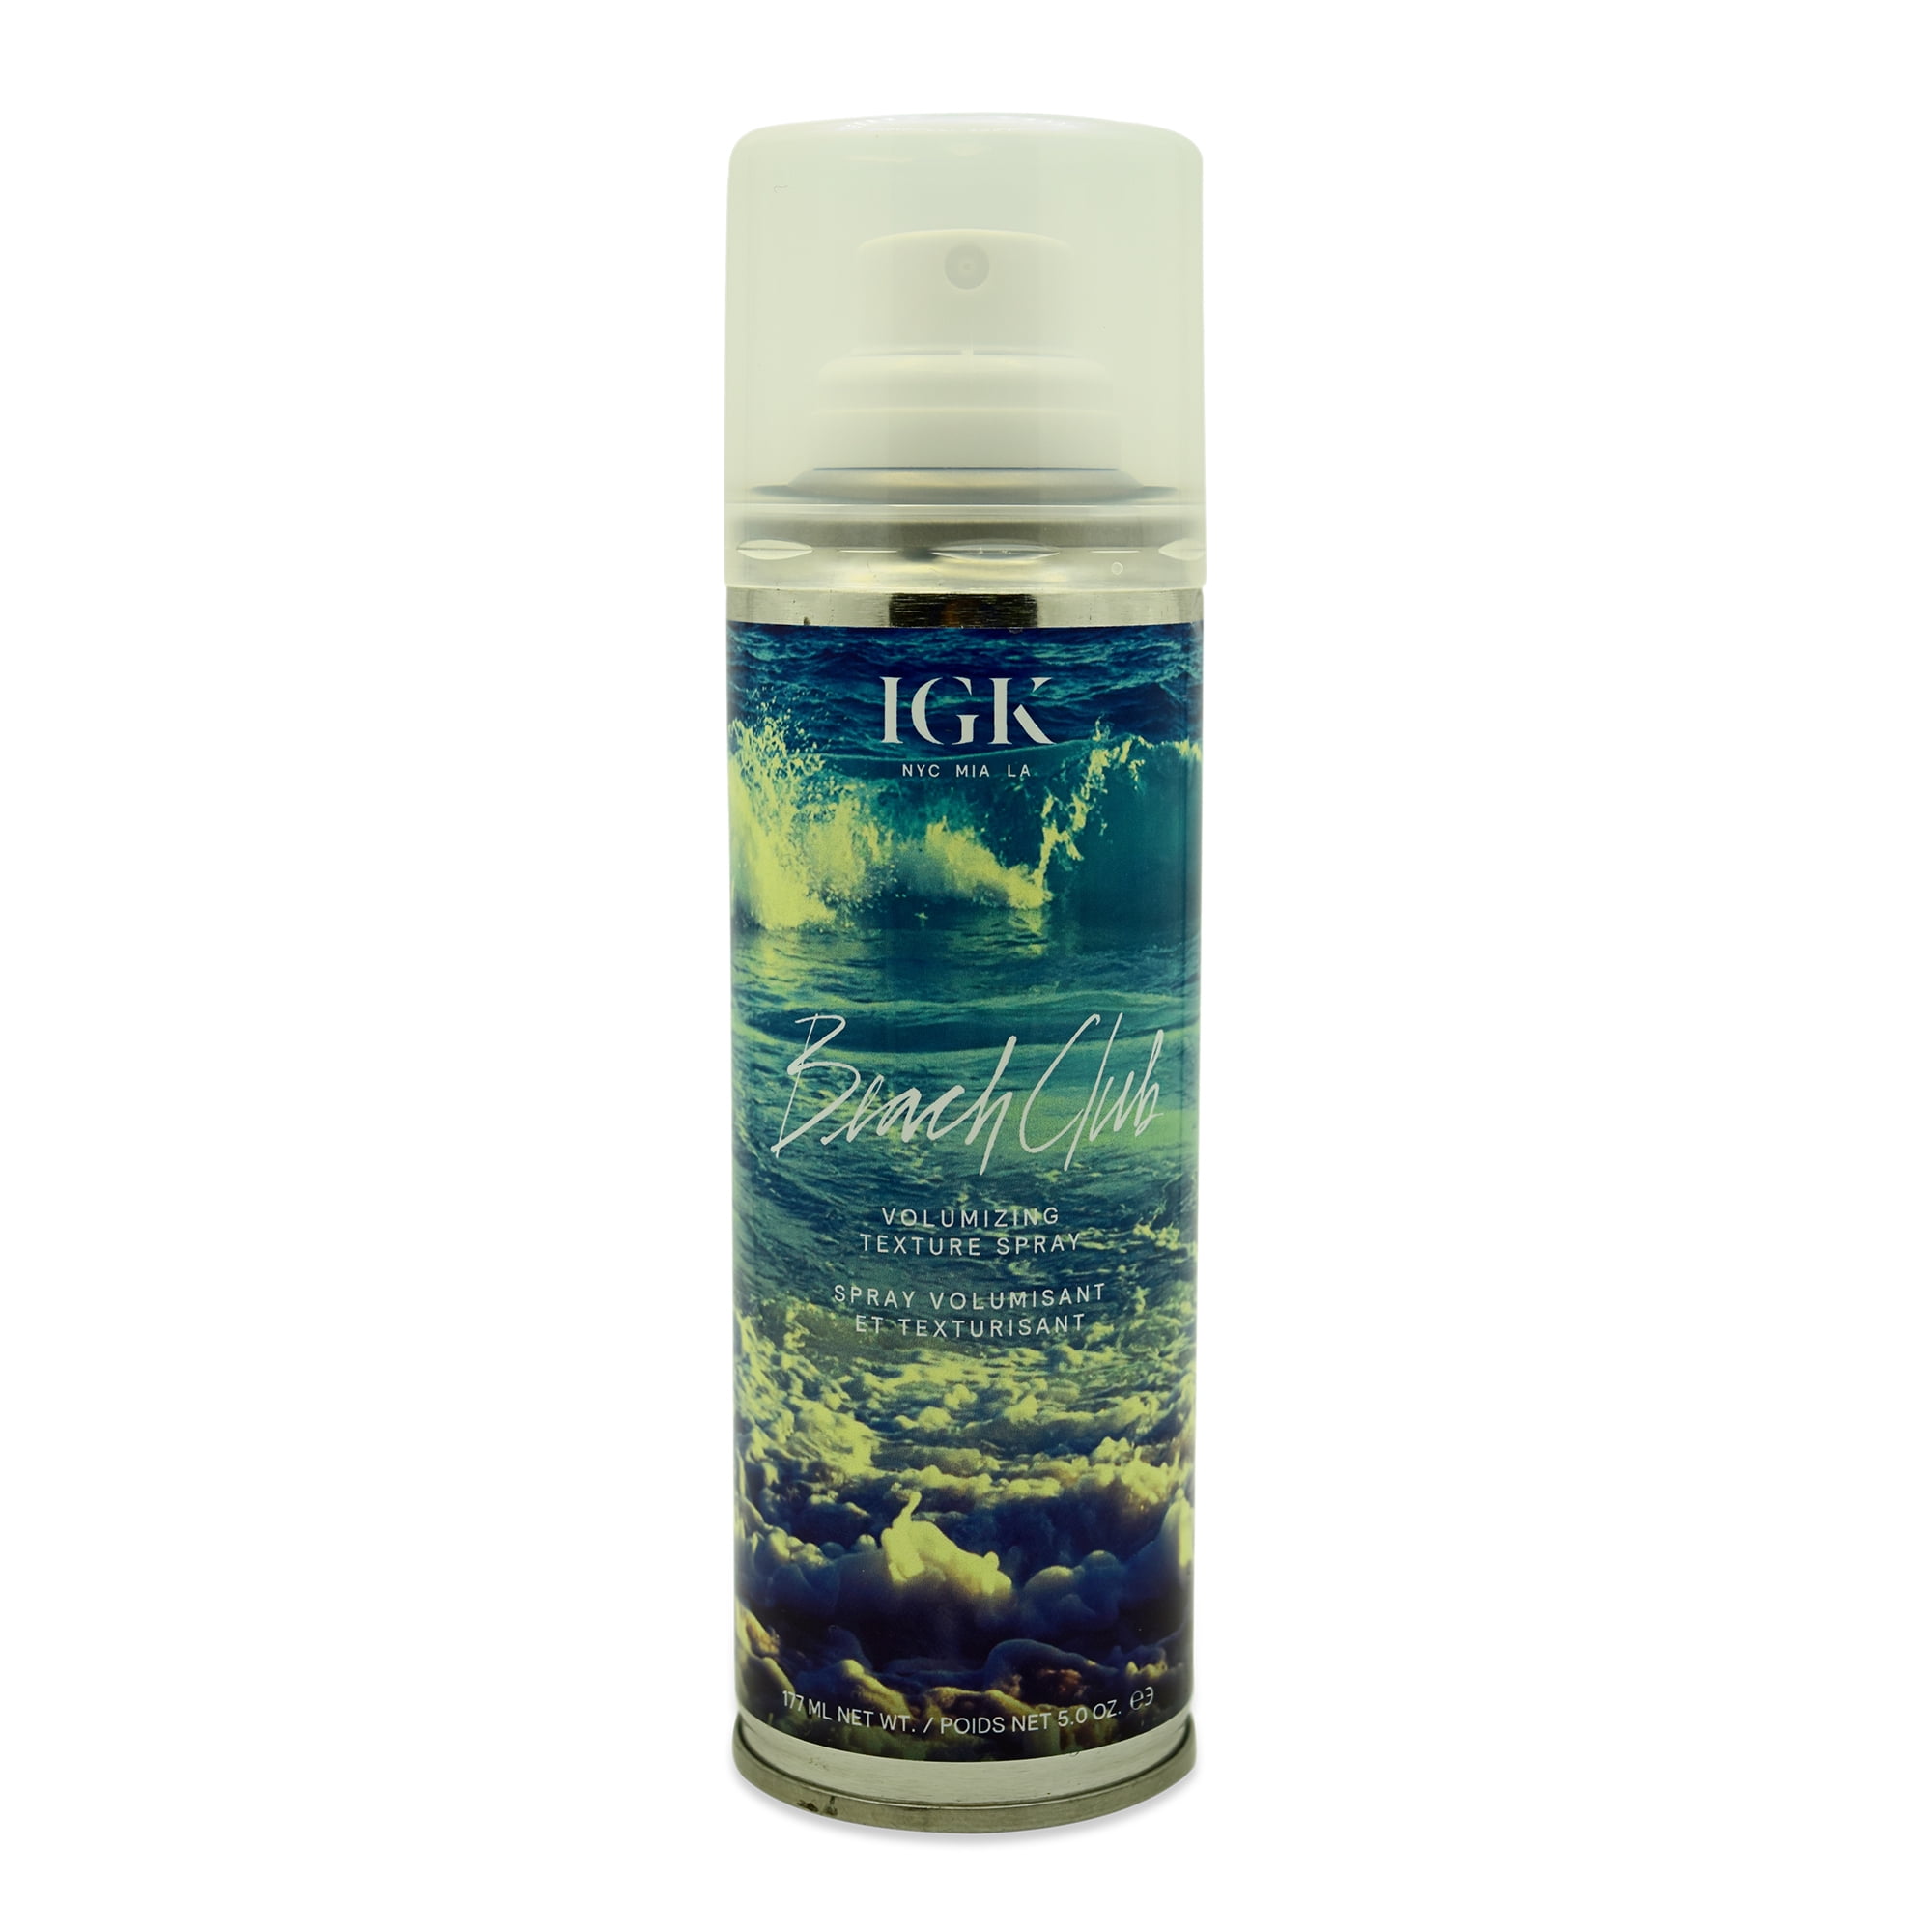 IGK Hair Beach Club Volume Texture Spray for perfect big beachy hair.